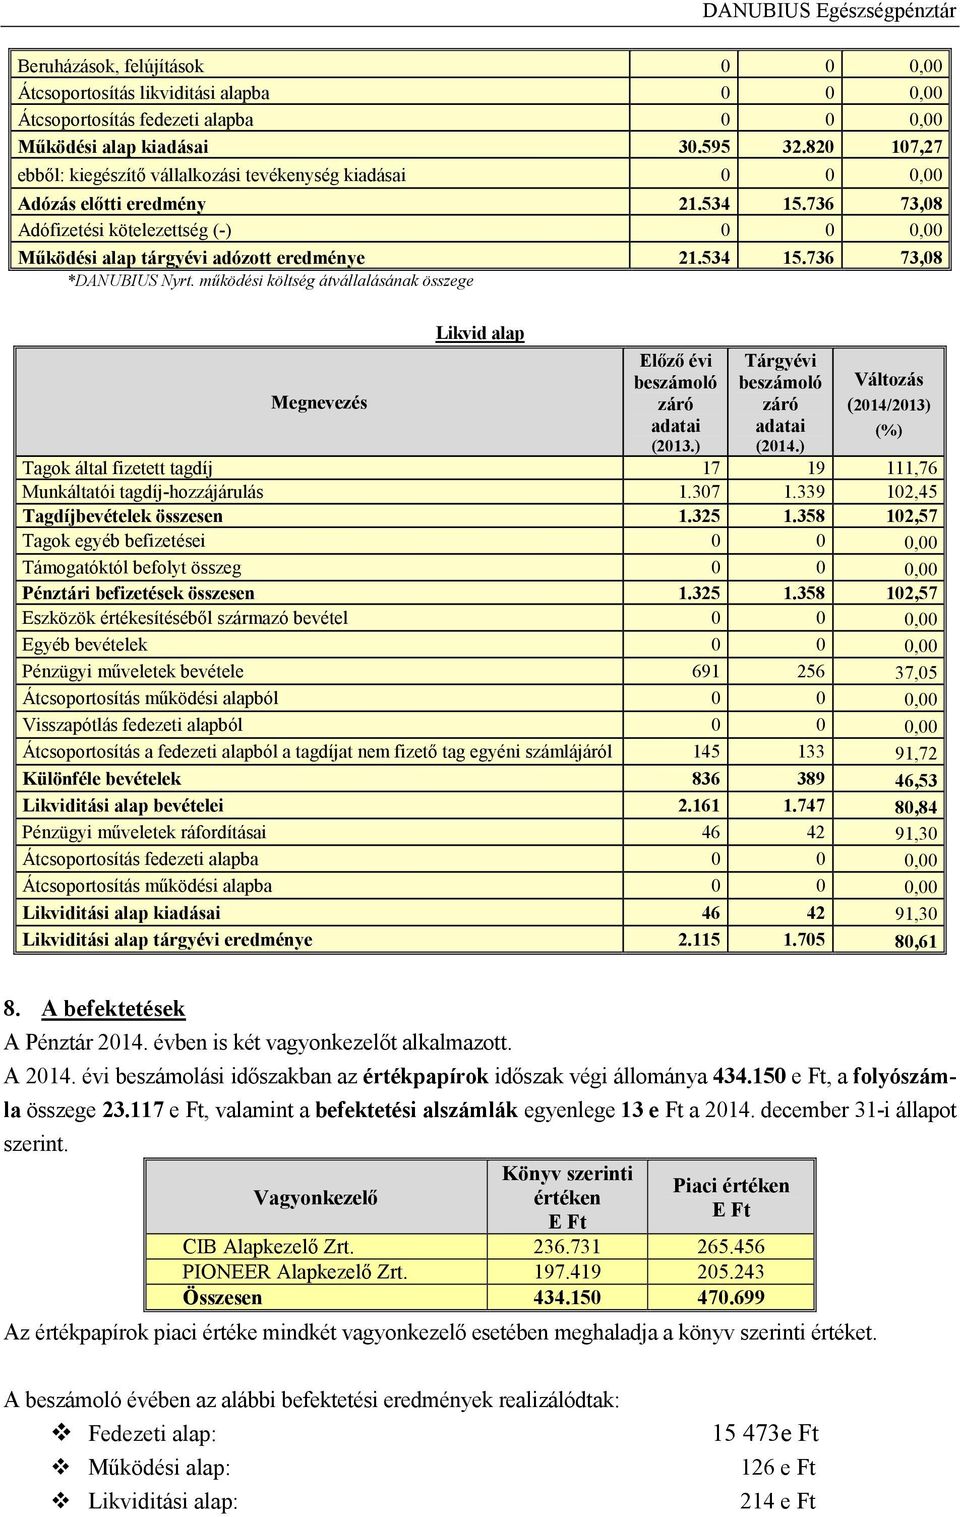 534 15.736 73,08 *DANUBIUS Nyrt. működési költség átvállalásának összege Megnevezés Likvid alap Előző évi záró adatai (2013.) Tárgyévi záró adatai (2014.